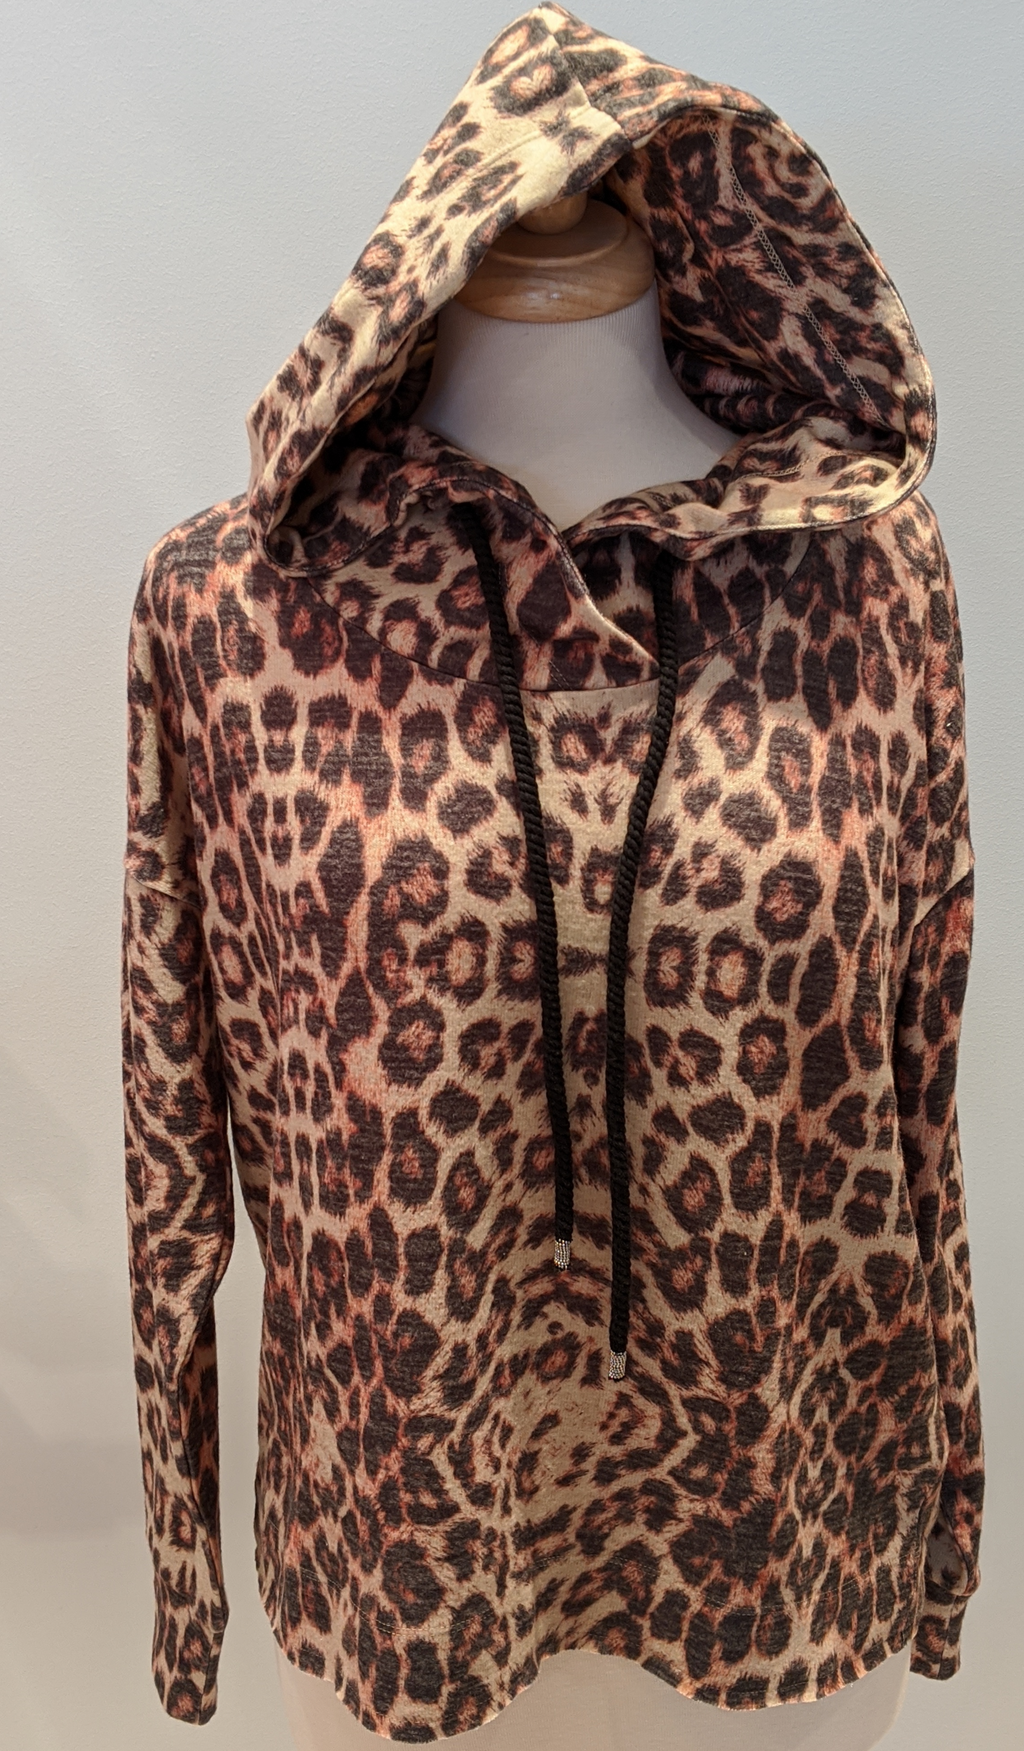 Leopard Print Pullover Hoodie - Sonia's Runway